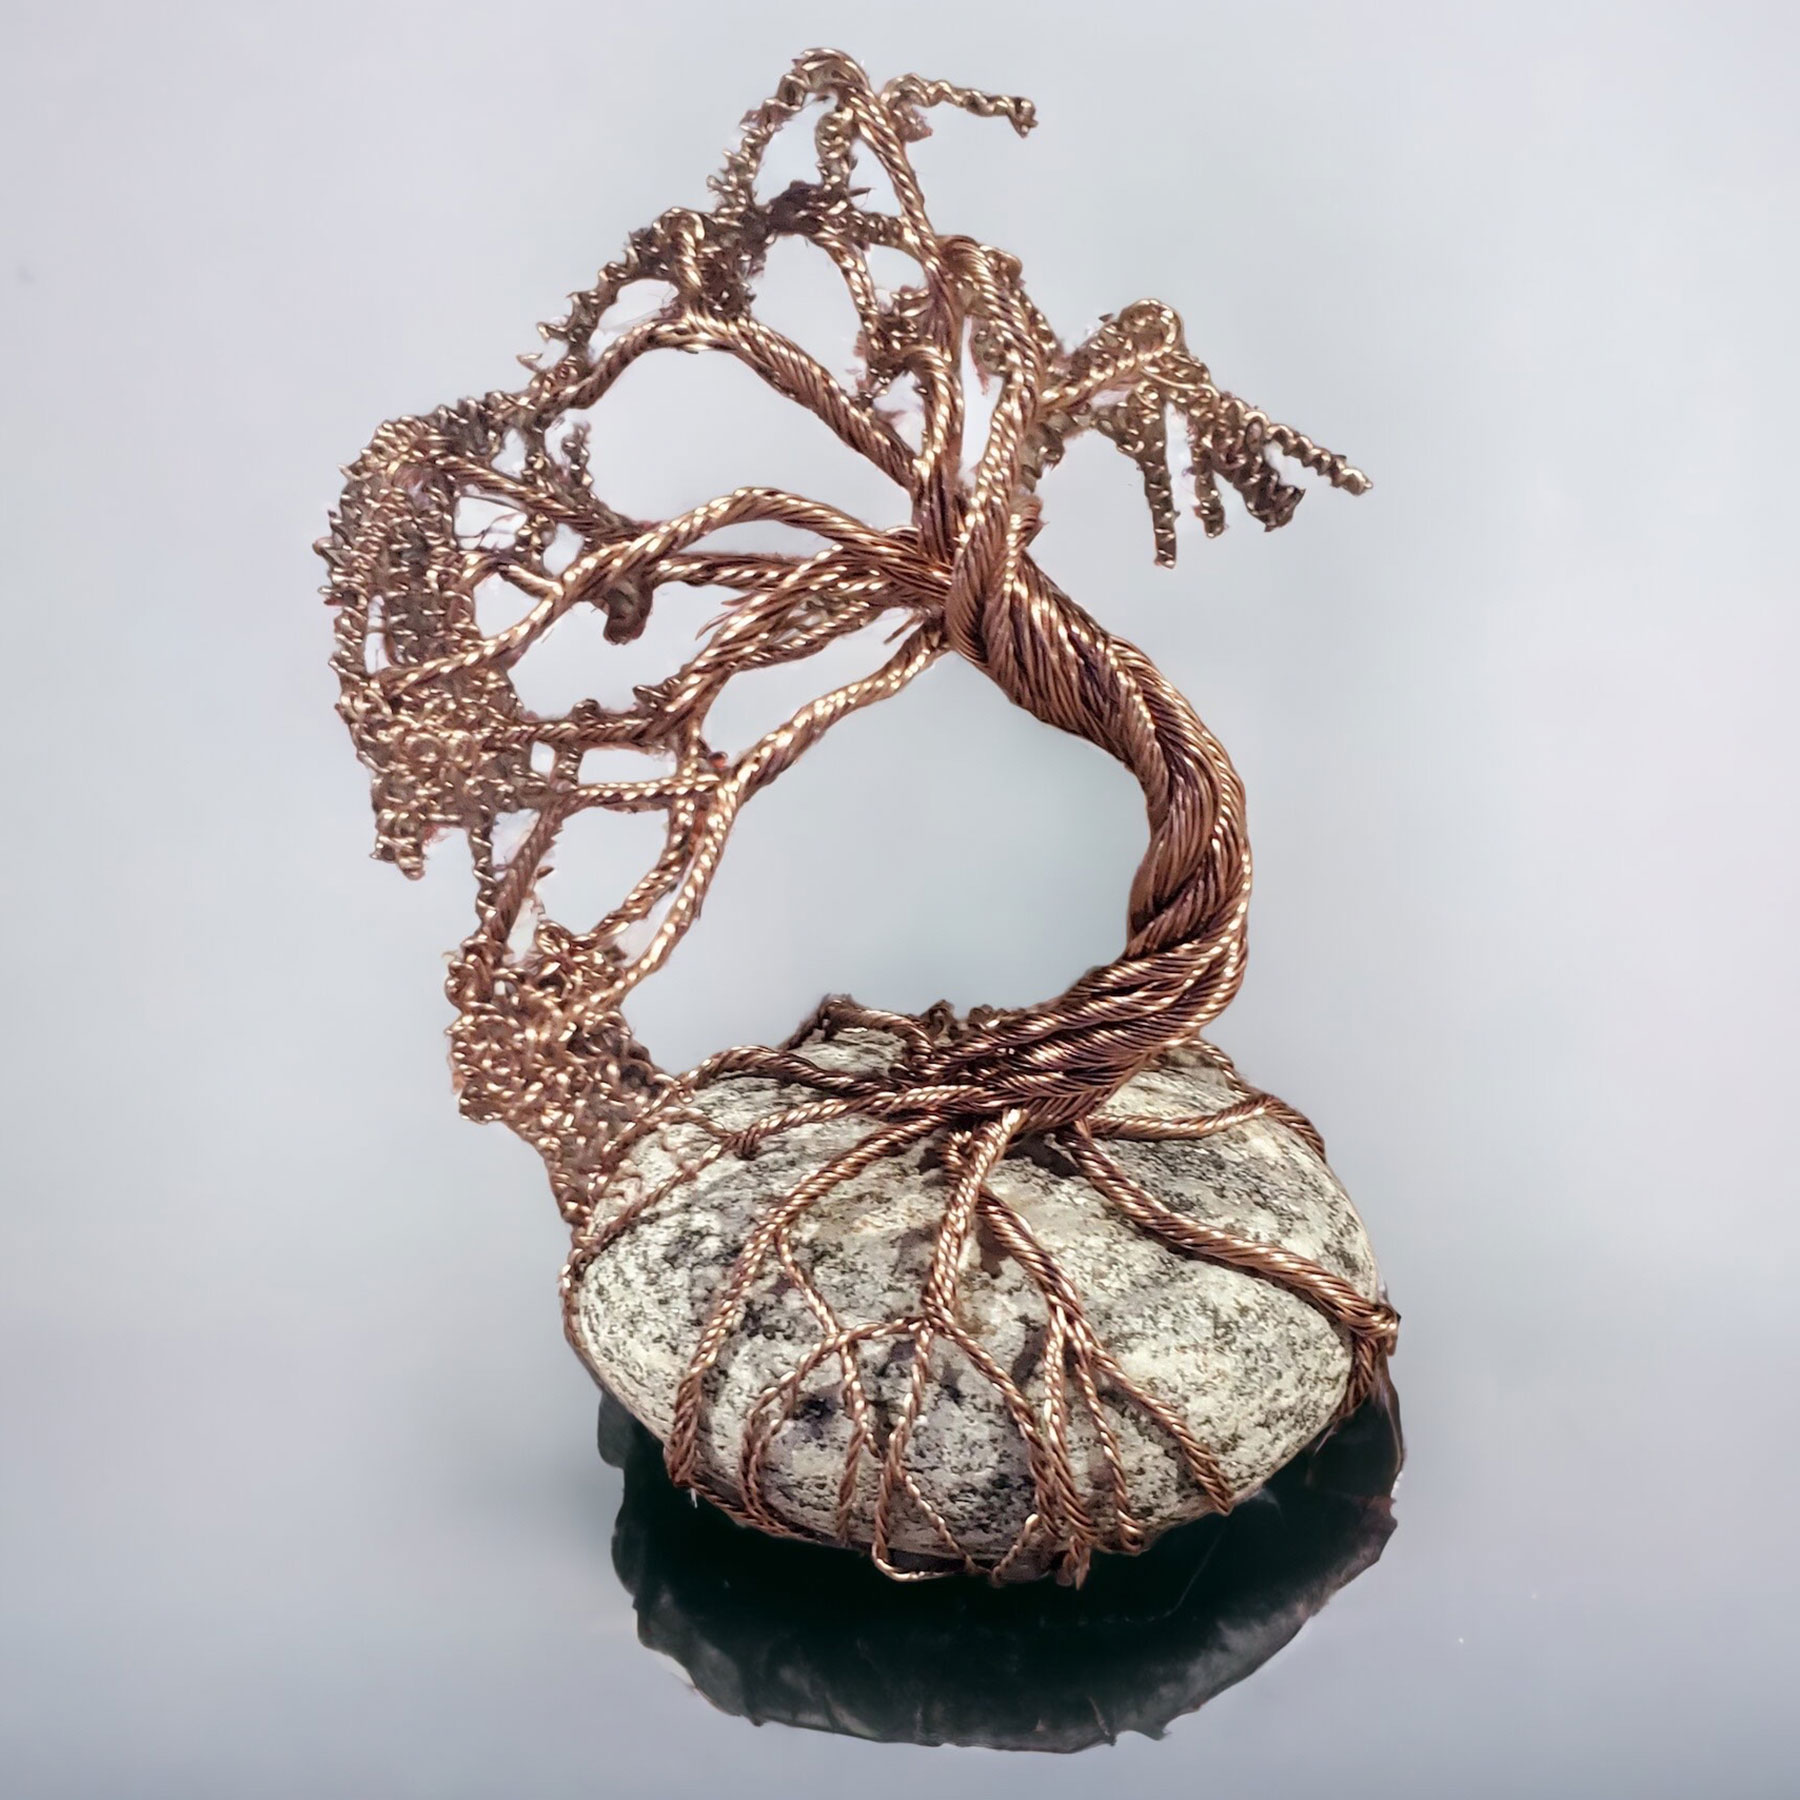 Tree of Love spirals  Copper wire crafts, Wire tree sculpture, Wire art  sculpture